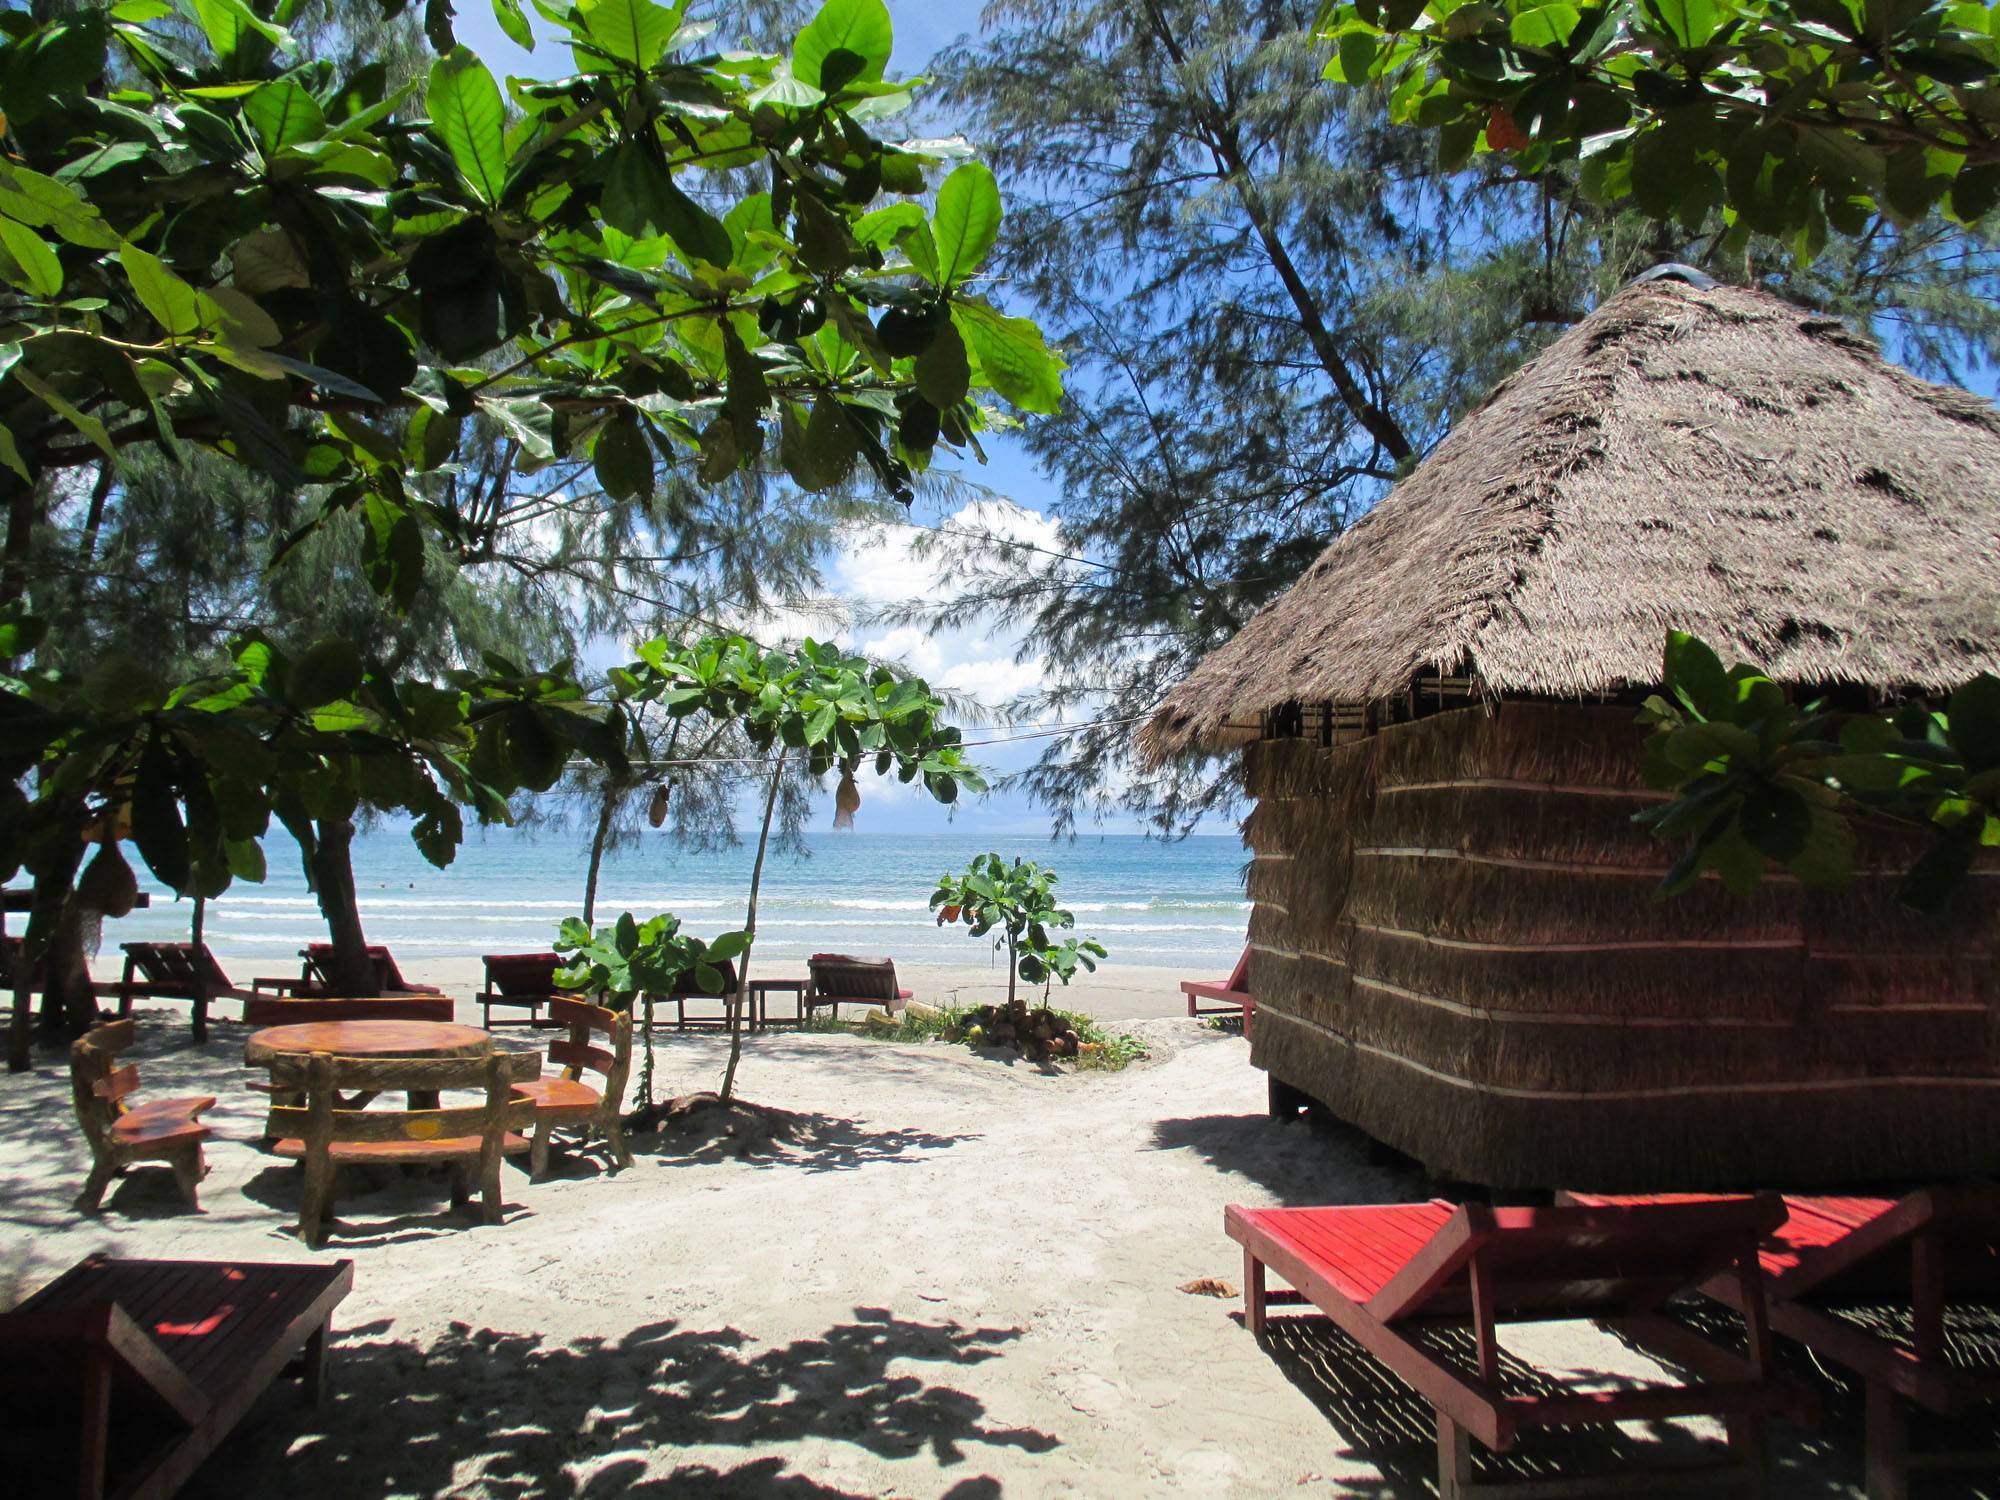 Камбоджа: пляжный отдых, лучшие морские курорты